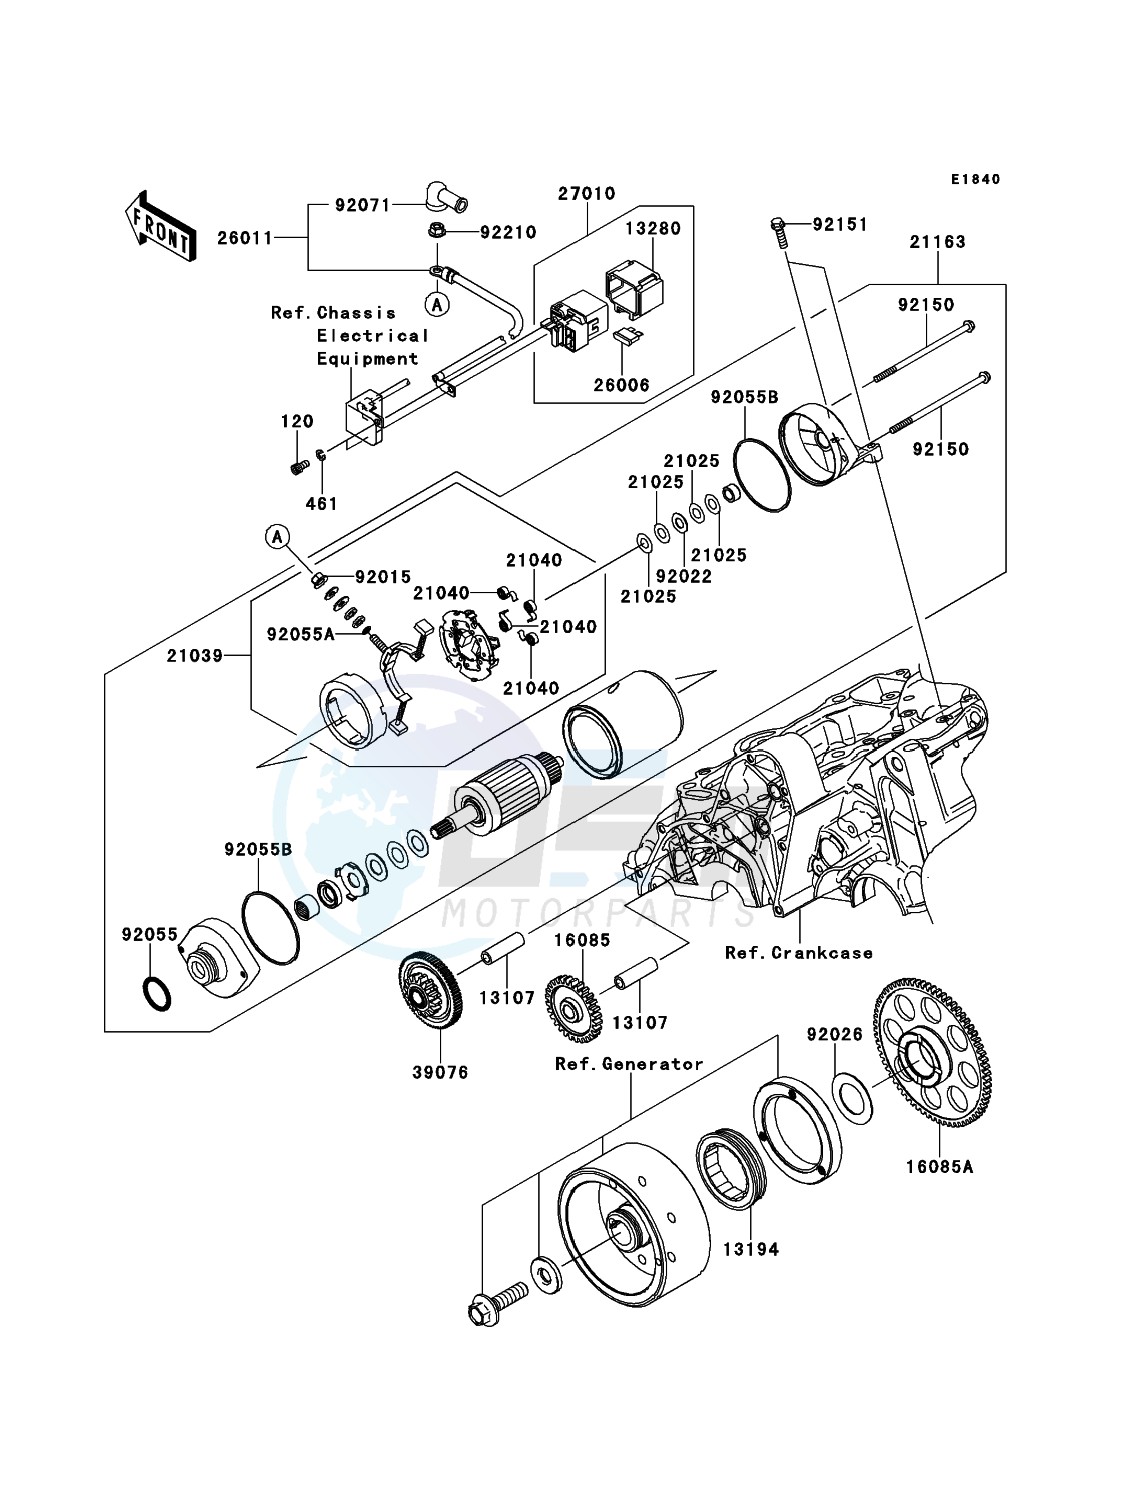 Starter Motor(-ER650AE046804) image